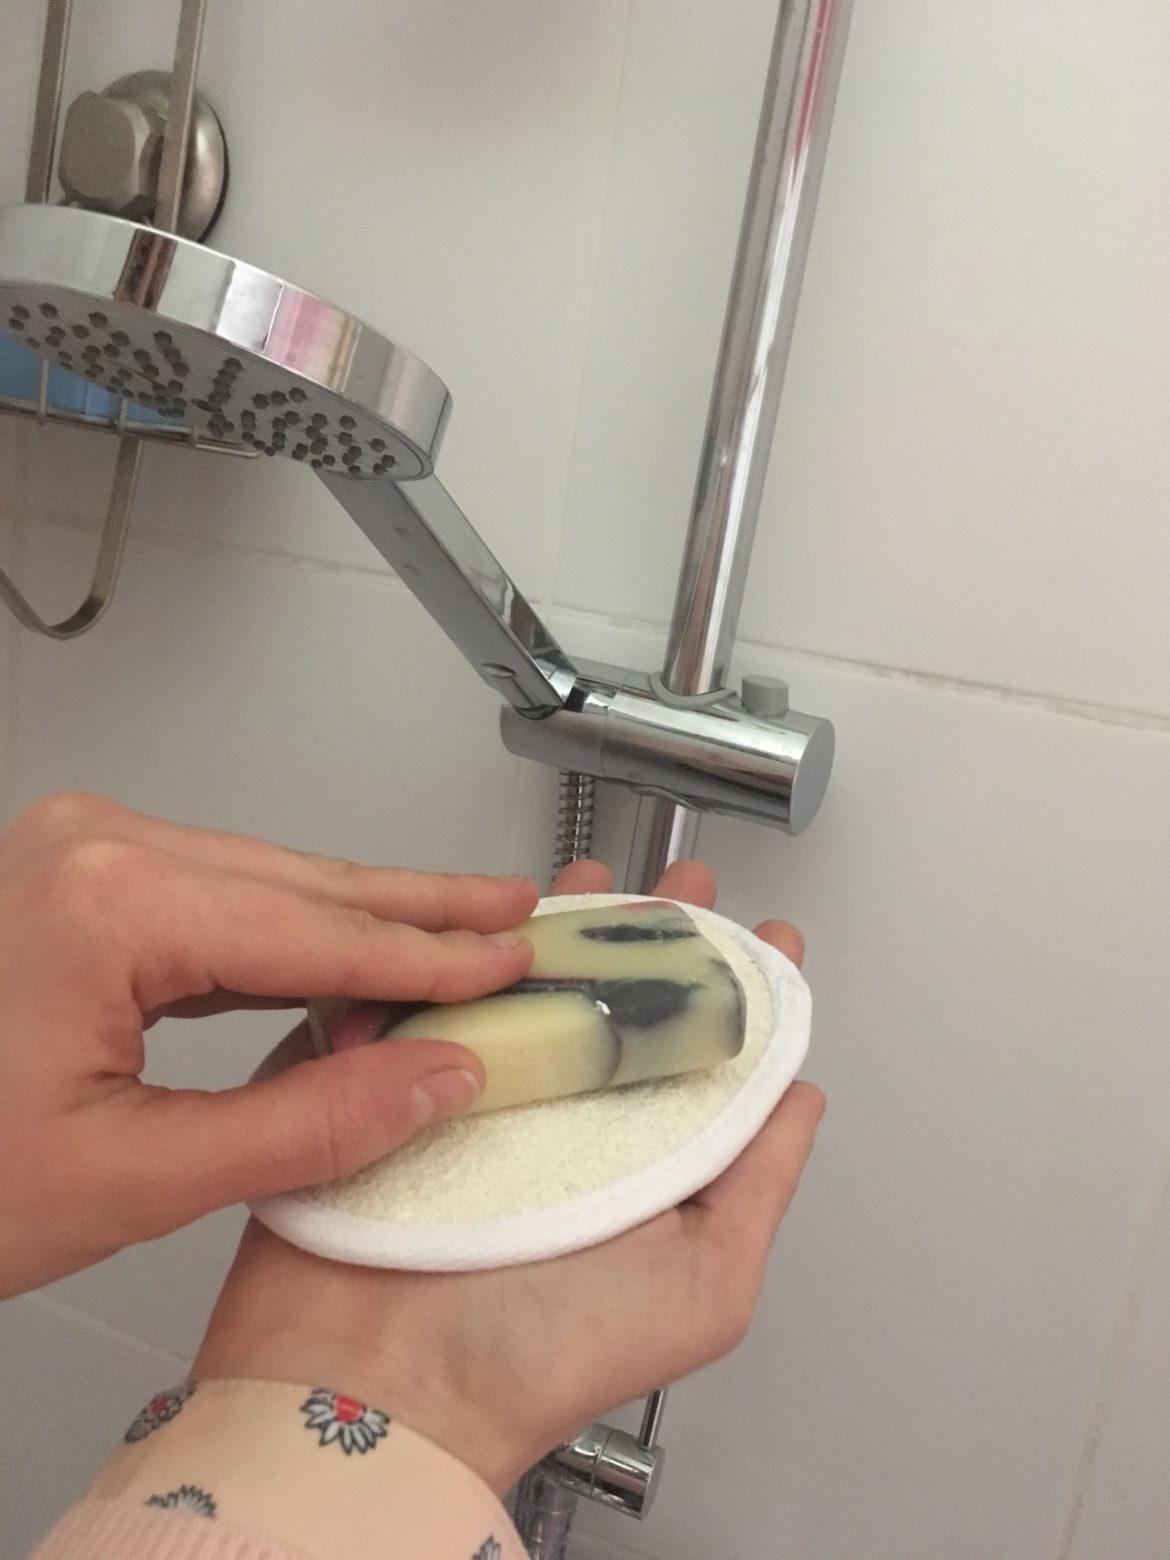 Une main dans un gant de loofah, sur lequel est posé un savon, devant un pommeau de douche